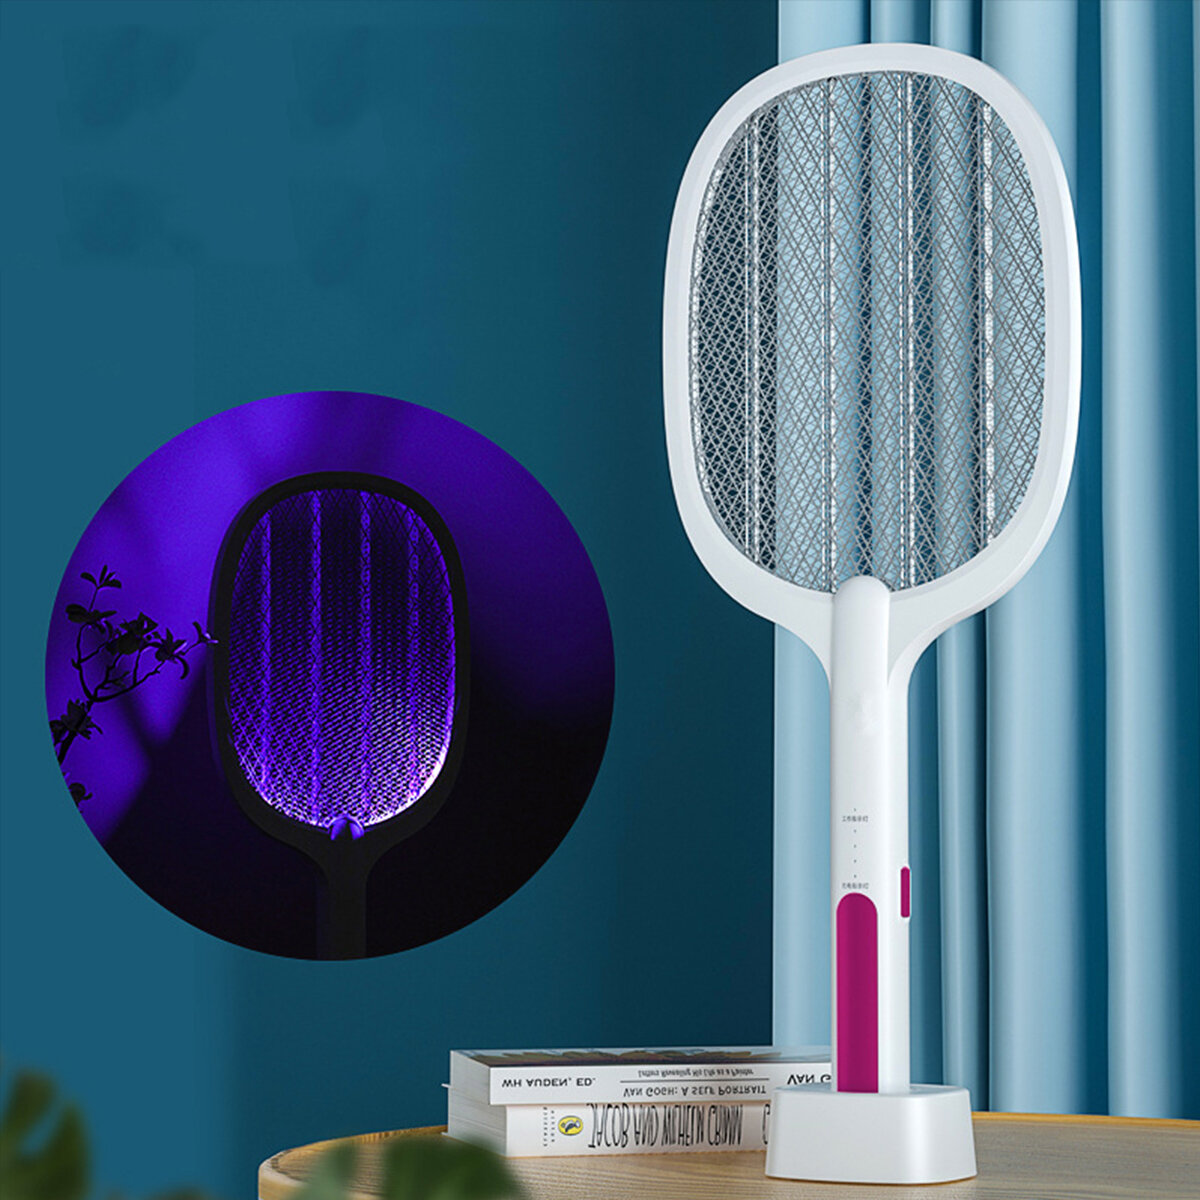 Разрядник комаров на 3000 В с лампой УФ-излучения, беспроводной, заряжаемый через USB, ловец мух и комаров для кемпинга, дома, улетучиватель насекомых.